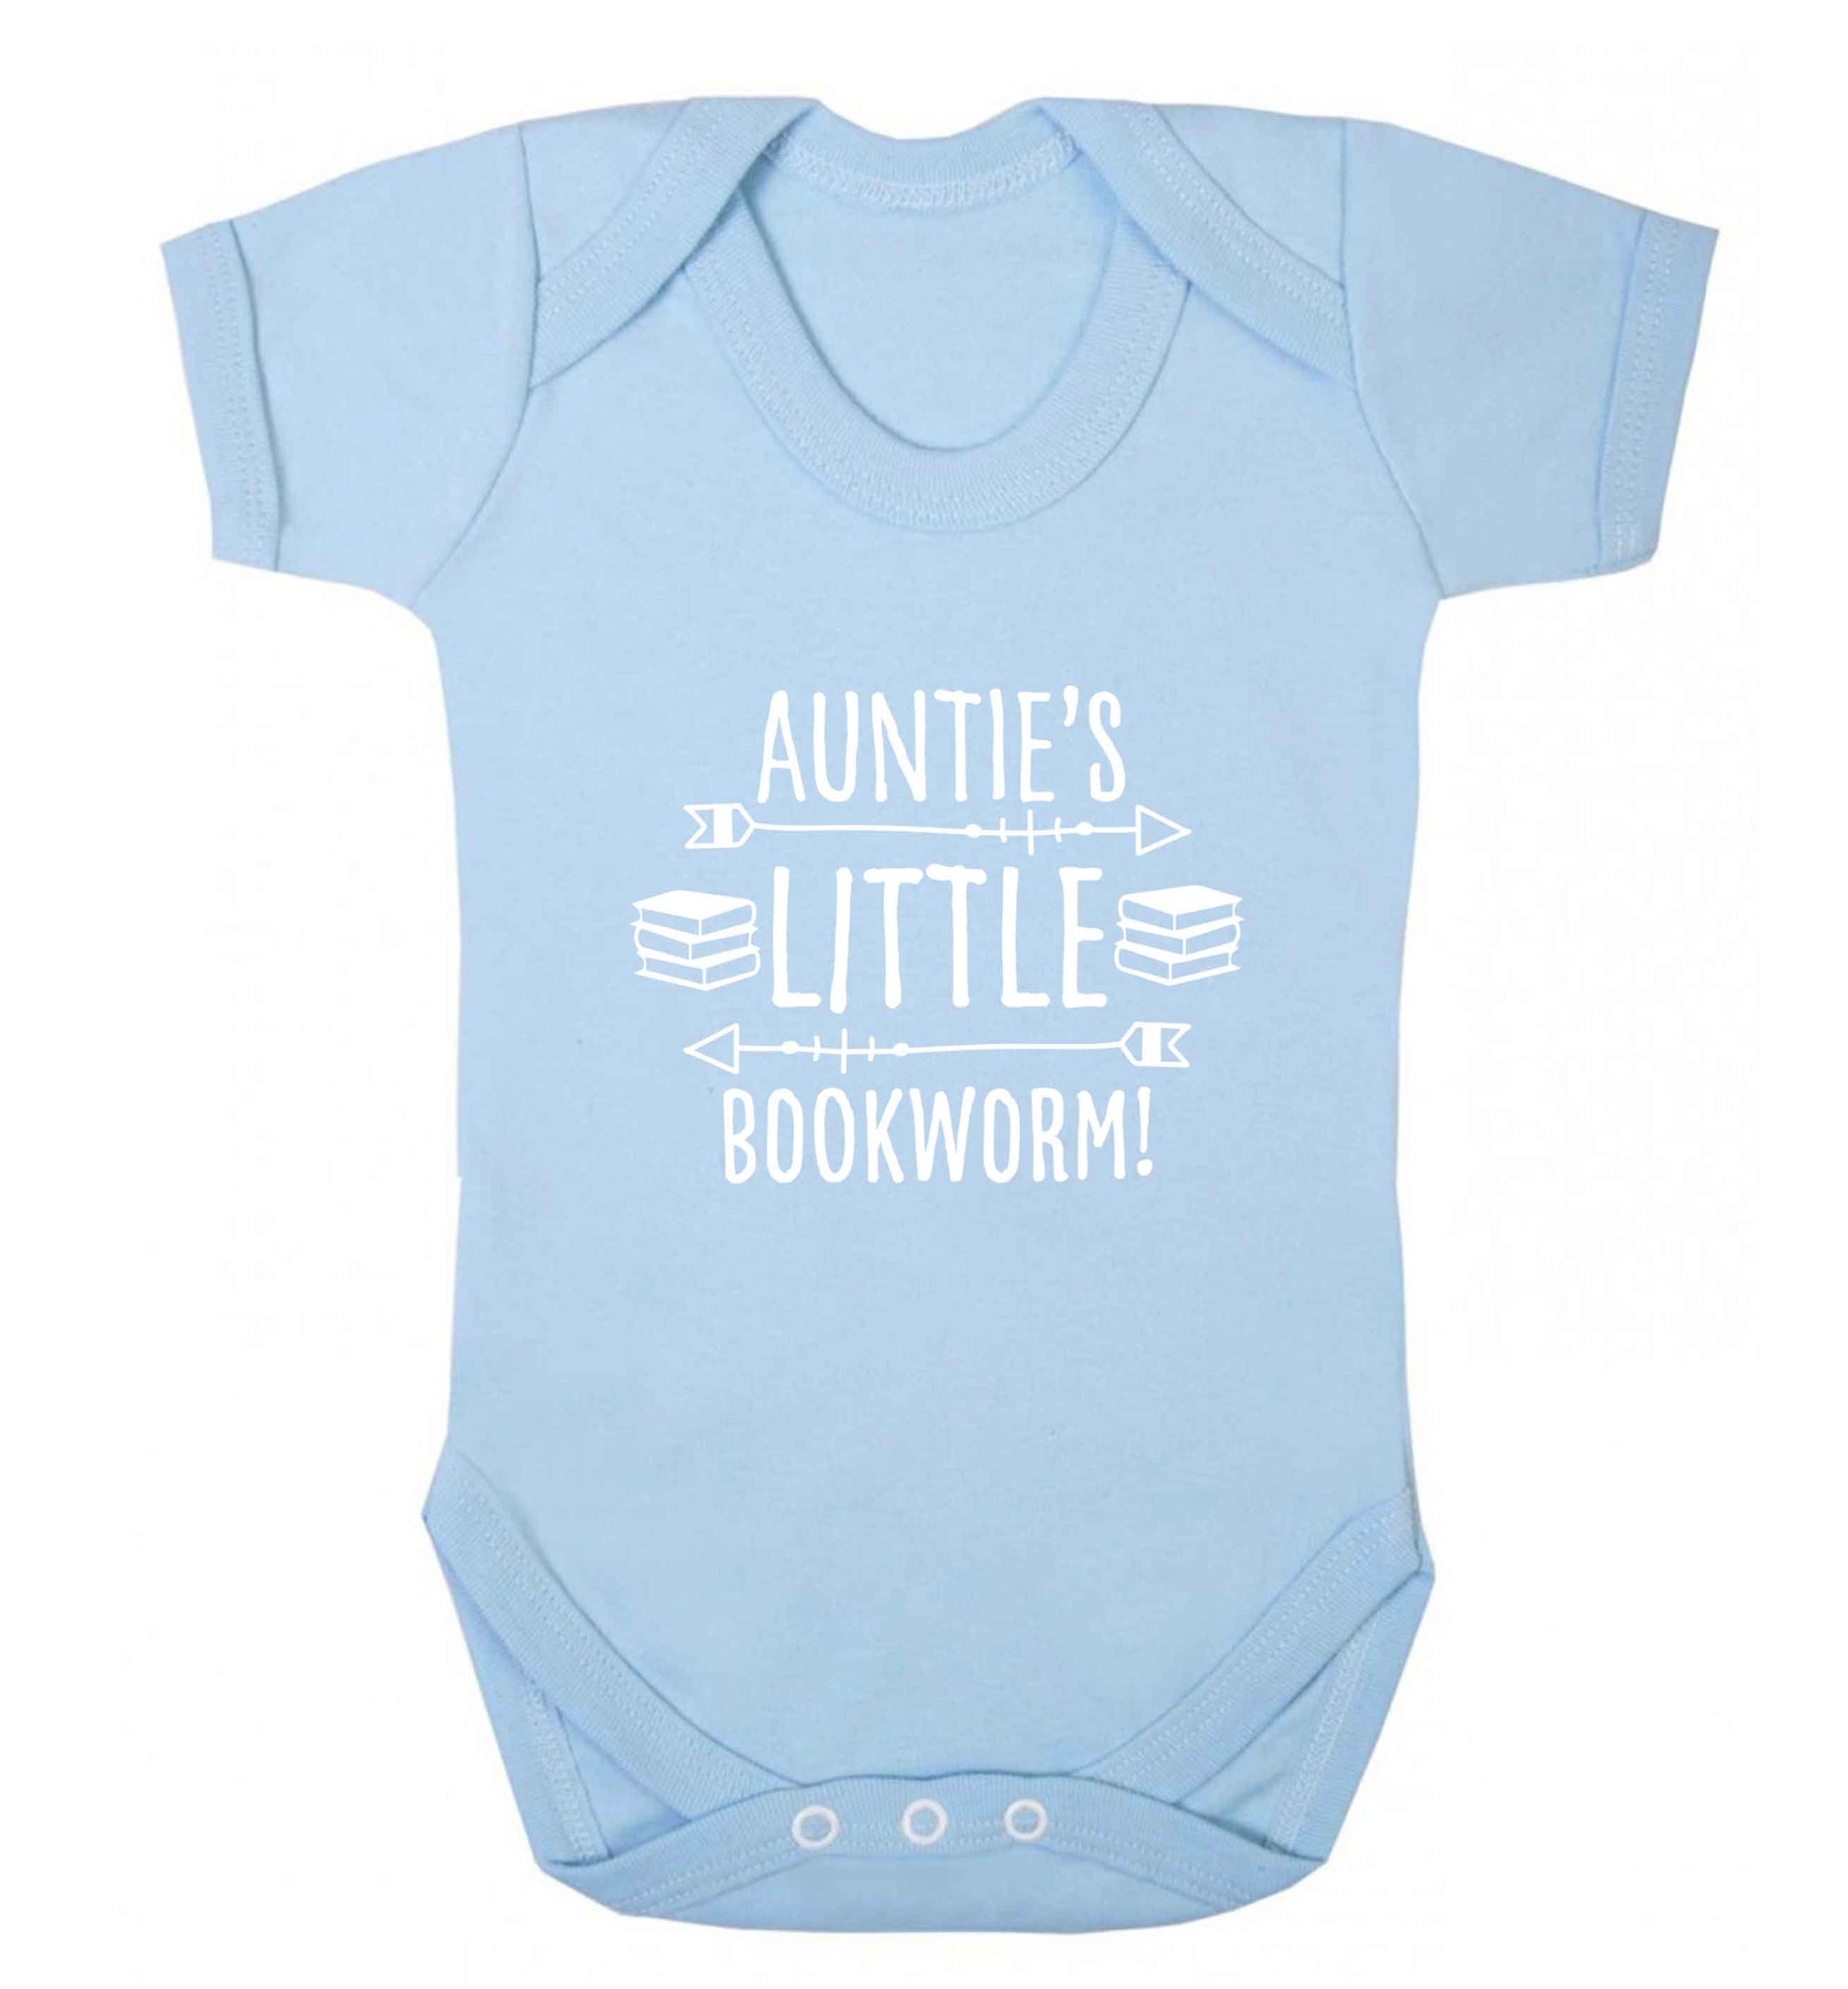 Auntie's little bookworm baby vest pale blue 18-24 months